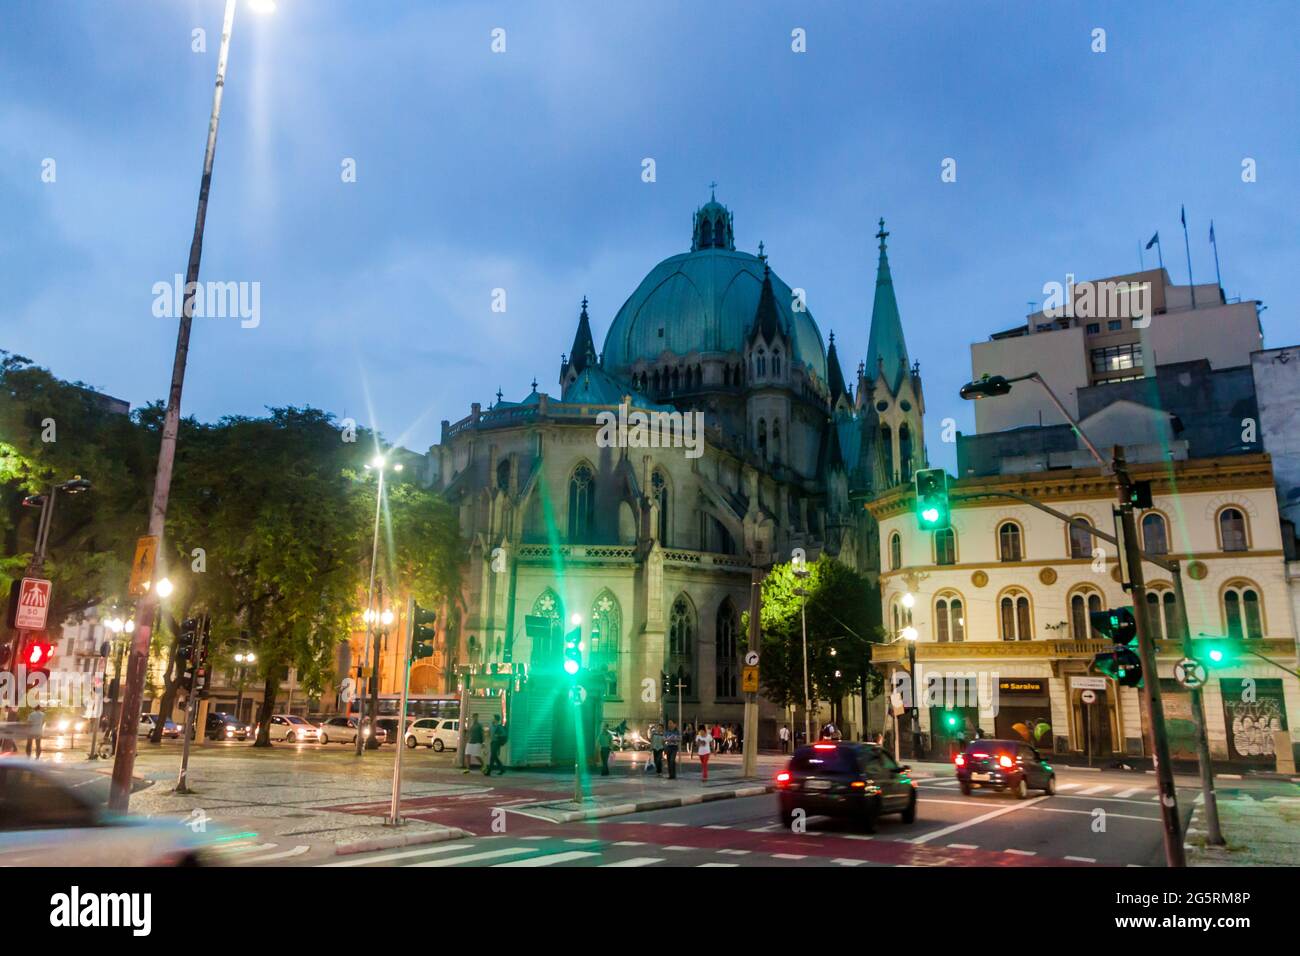 SAN PAOLO, BRASILE - 2 FEBBRAIO 2015: Vista serale della cattedrale di Catedral da se a San Paolo, Brasile Foto Stock